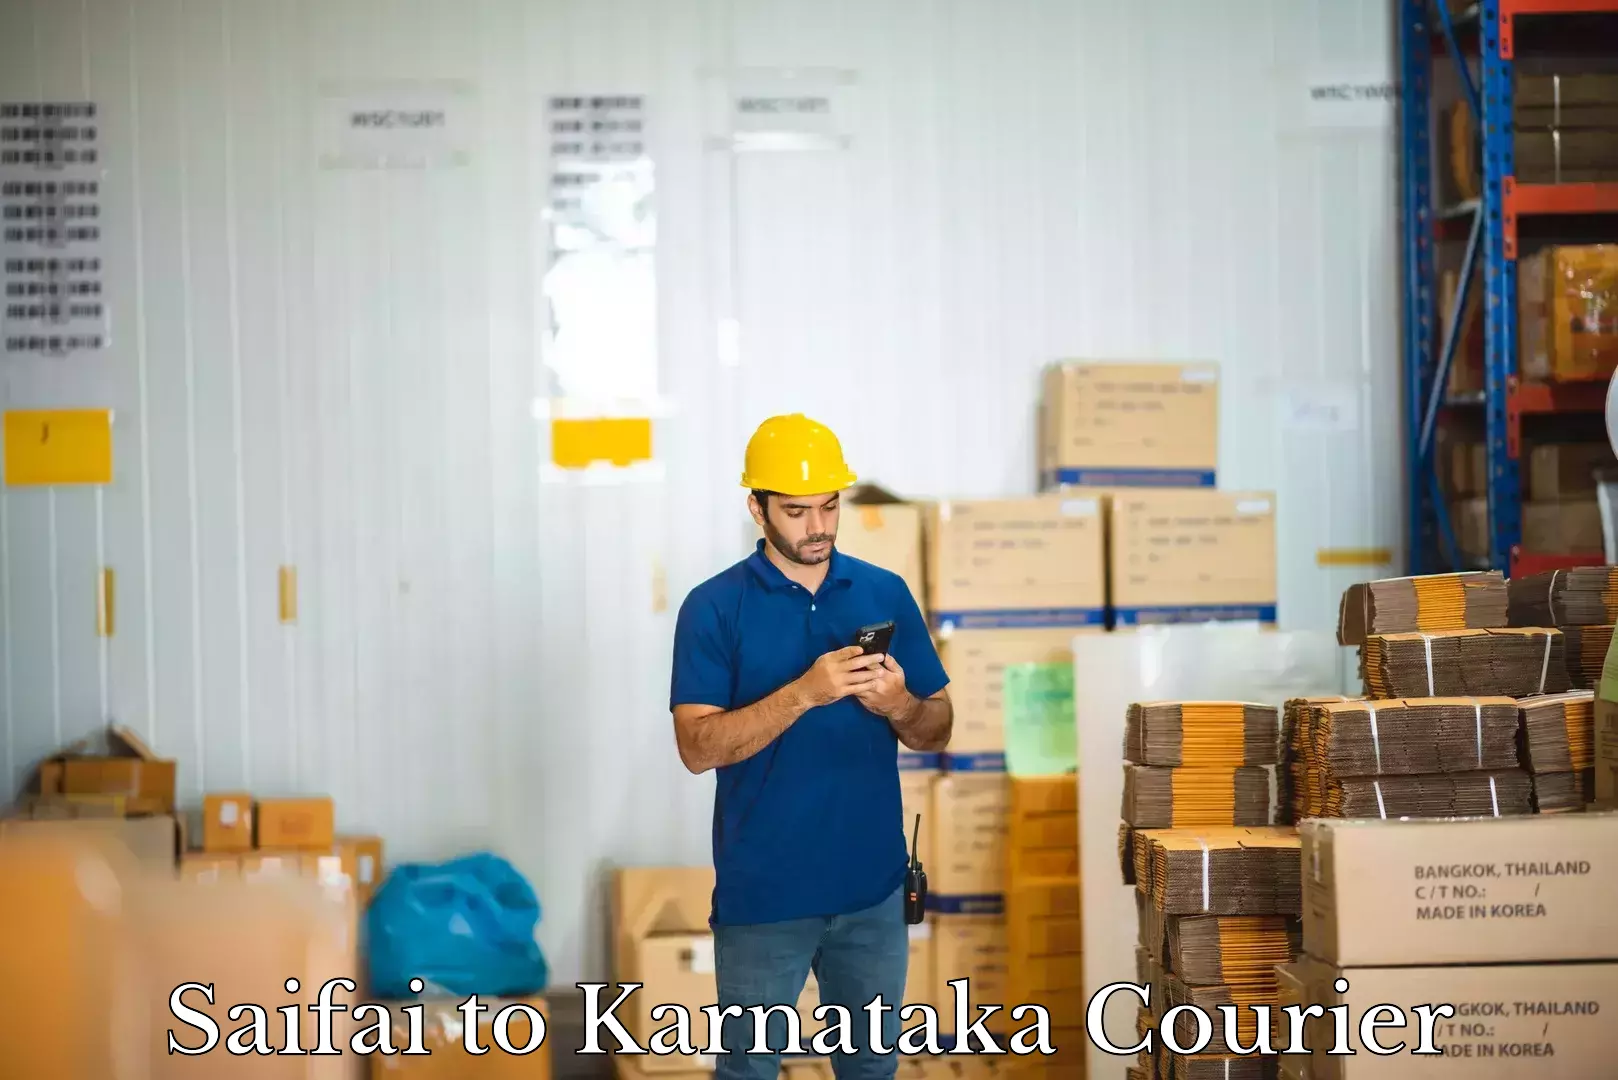 Luggage shipment strategy Saifai to Karnataka